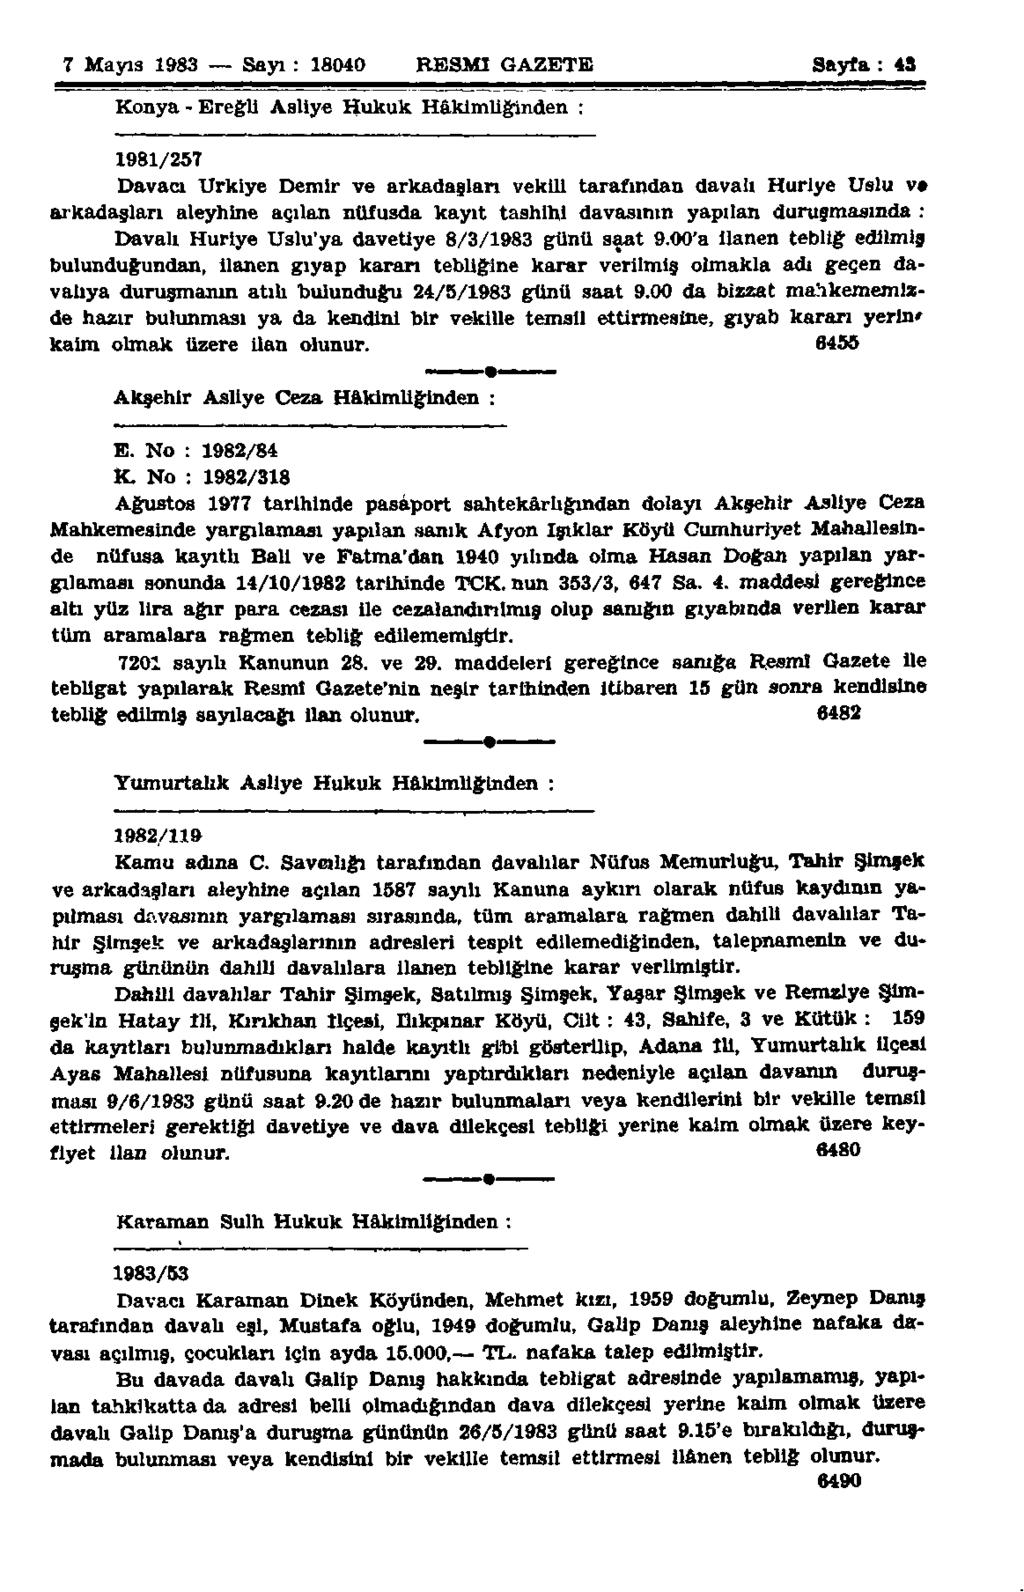 7 Mayıs 1983 Sayı: 18040 RESMİ GAZETE Sayfa: 43 Konya-Ereğli Asliye Hukuk Hâkimliğinden : 1981/257 Dava» Urkiye Demir ve arkadaşları vekili tarafından davalı Huriye Uslu v» arkadaşları aleyhine